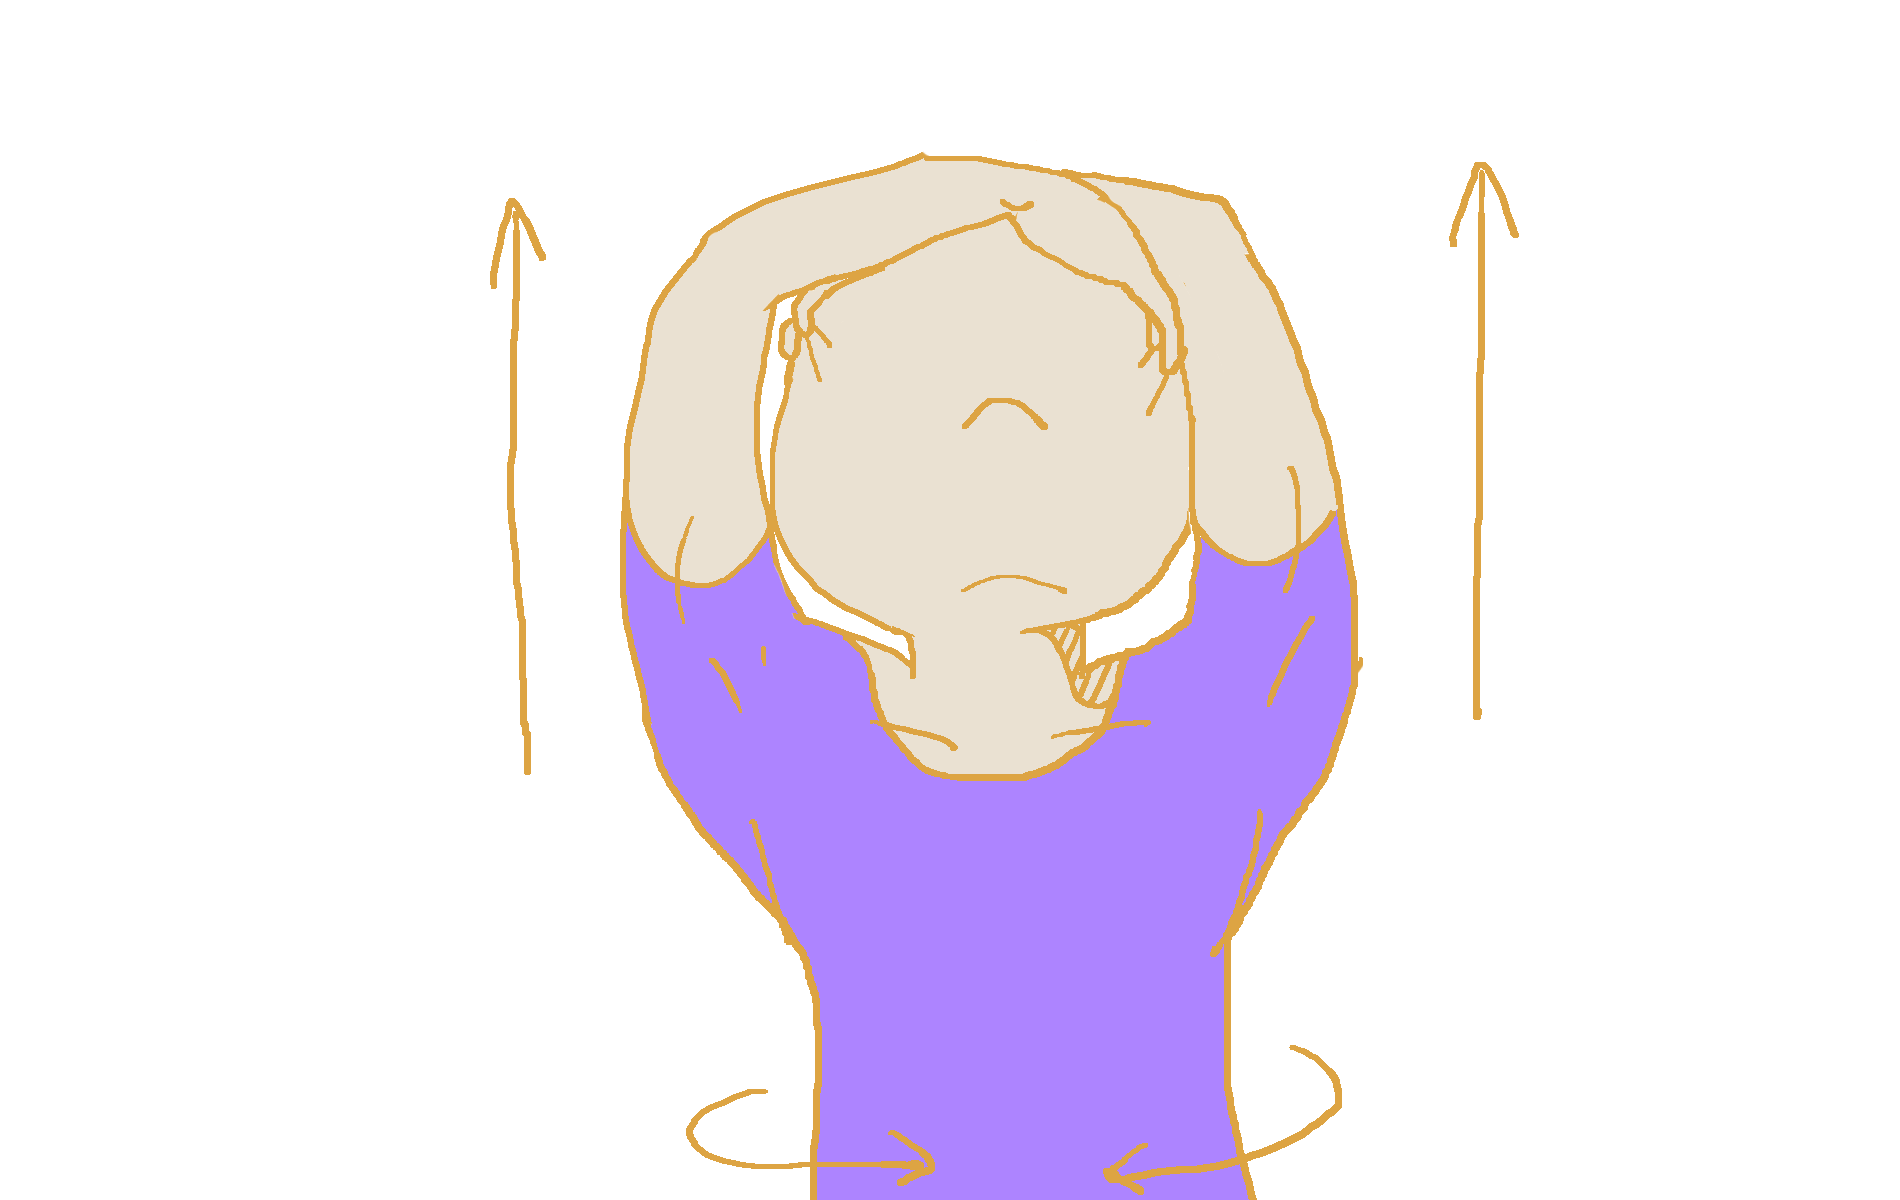 1.頭の上で両腕を交差させ、それぞれ反対側の目尻部分を3本指ではわす。このとき背筋はまっすぐ。絶対に前後に曲げないこと。 2.目尻部分を両手で盗聴に向かって引っぱり上げる。ちょうどUFOキャッチャーが景品を掴み上げるイメージ。この状態で30秒キープ。胸を張り、肩甲骨を意識して。